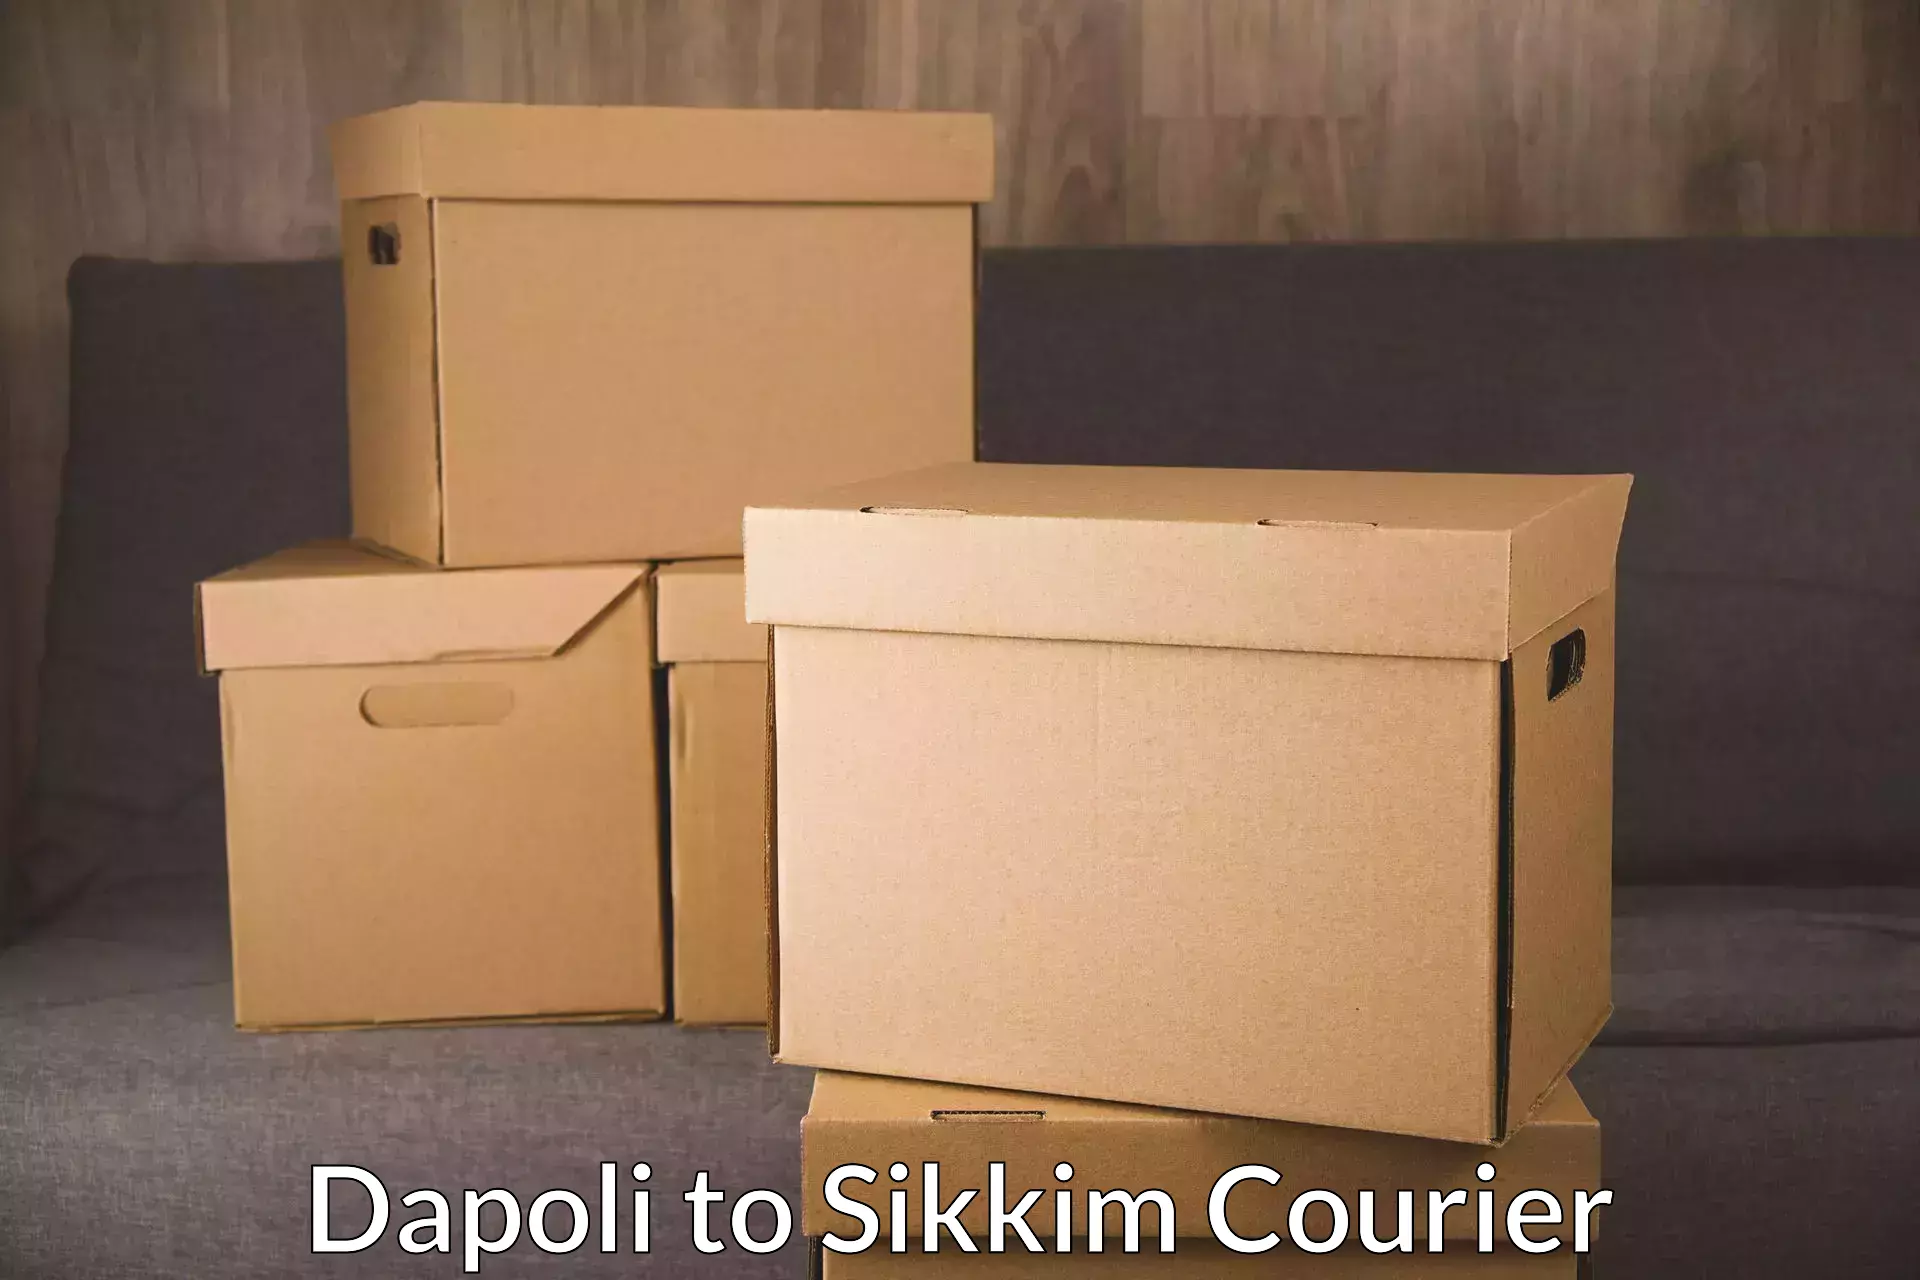 Courier service comparison Dapoli to Ranipool